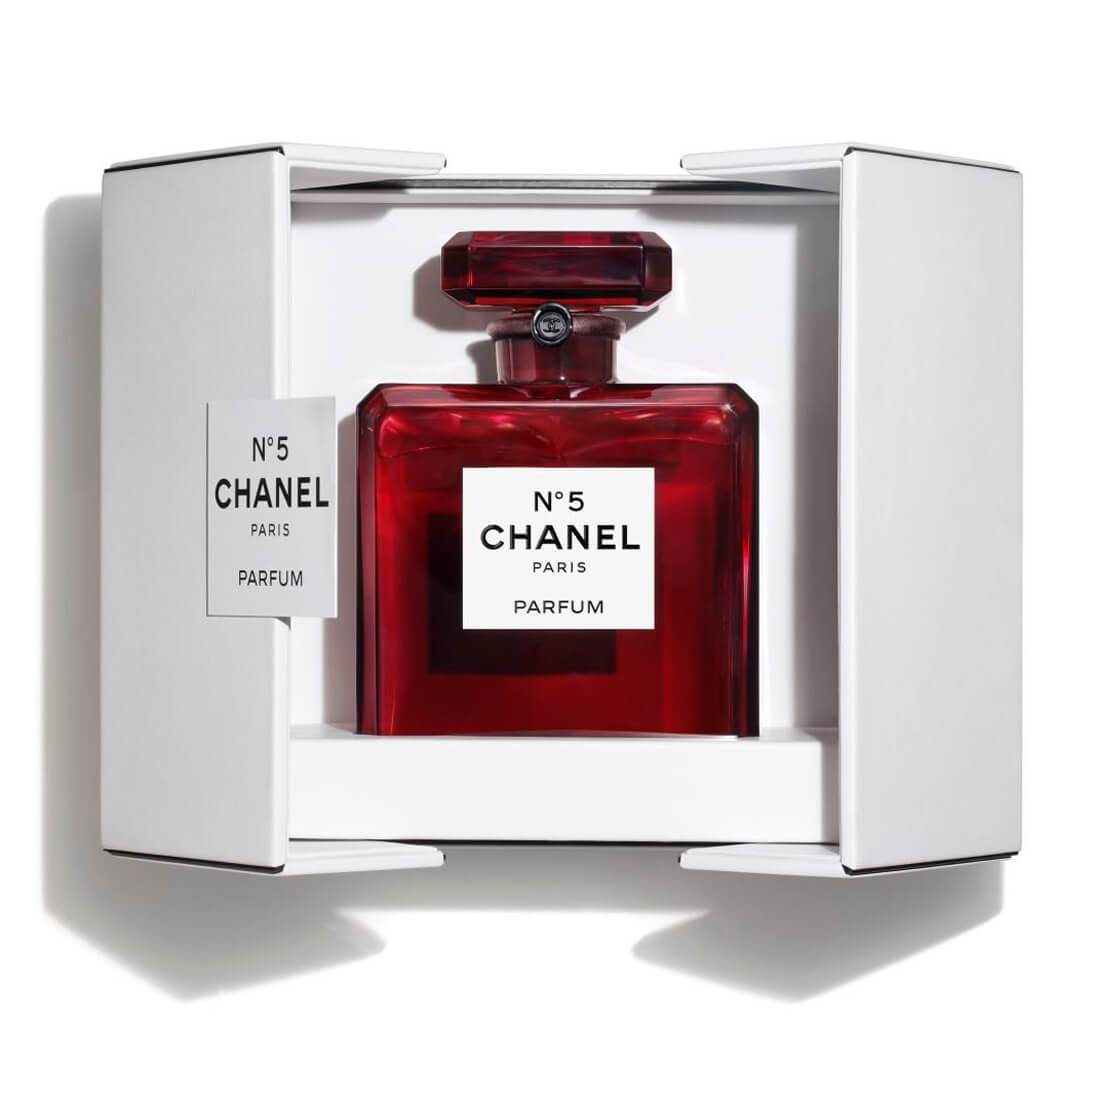 Chanel N1 DE CHANEL LEAU ROUGE  Sis Scents